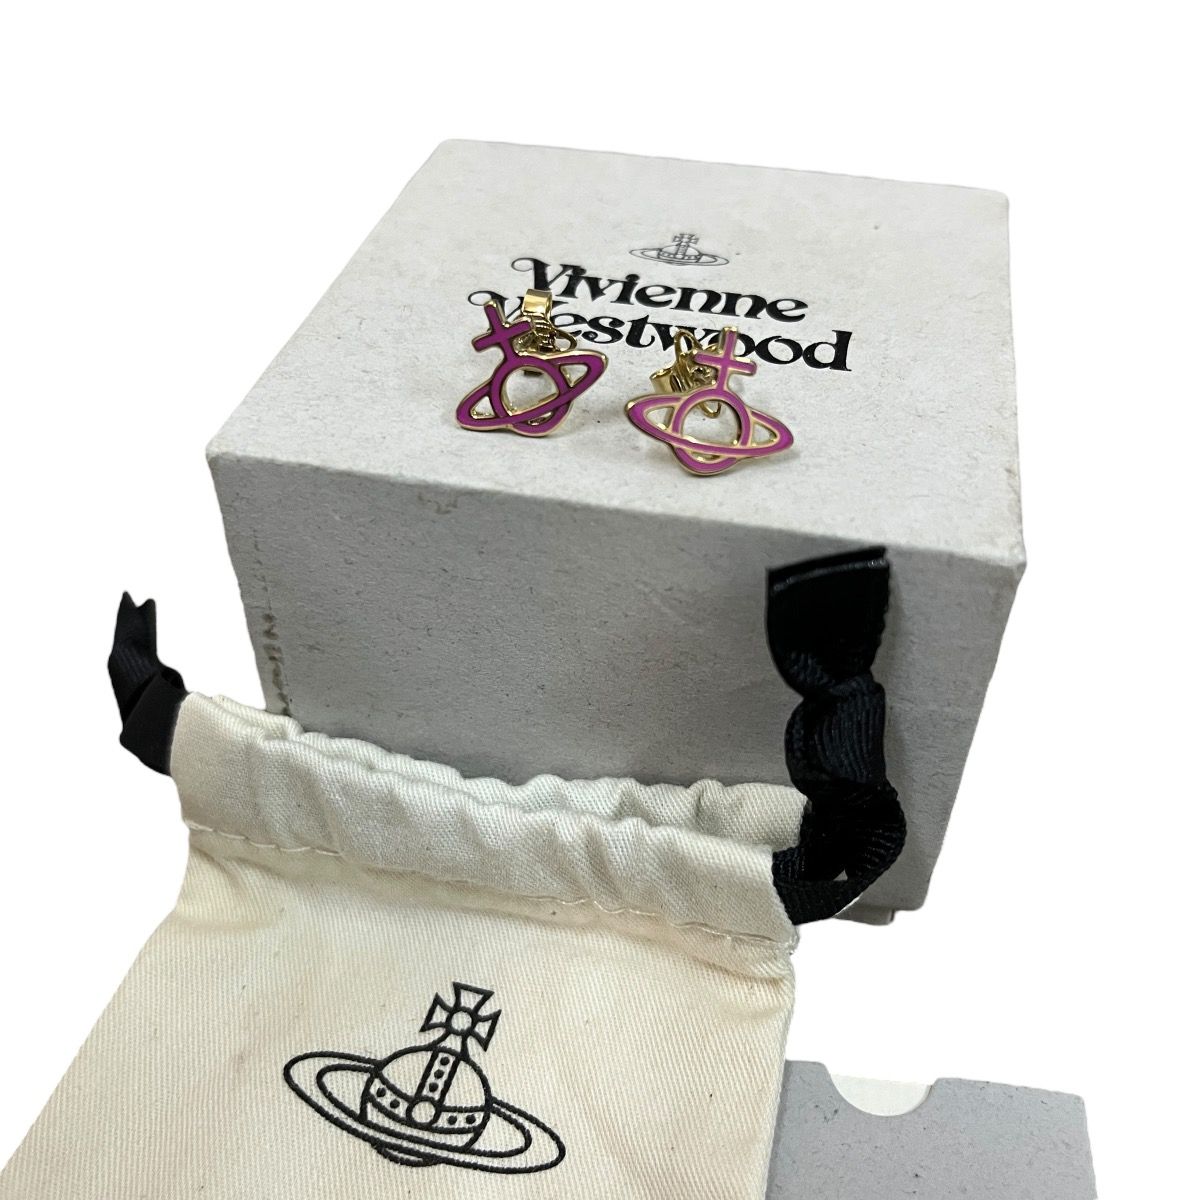 Vivienne Westwood Orb Ornella Bas Relief Earrings - 1